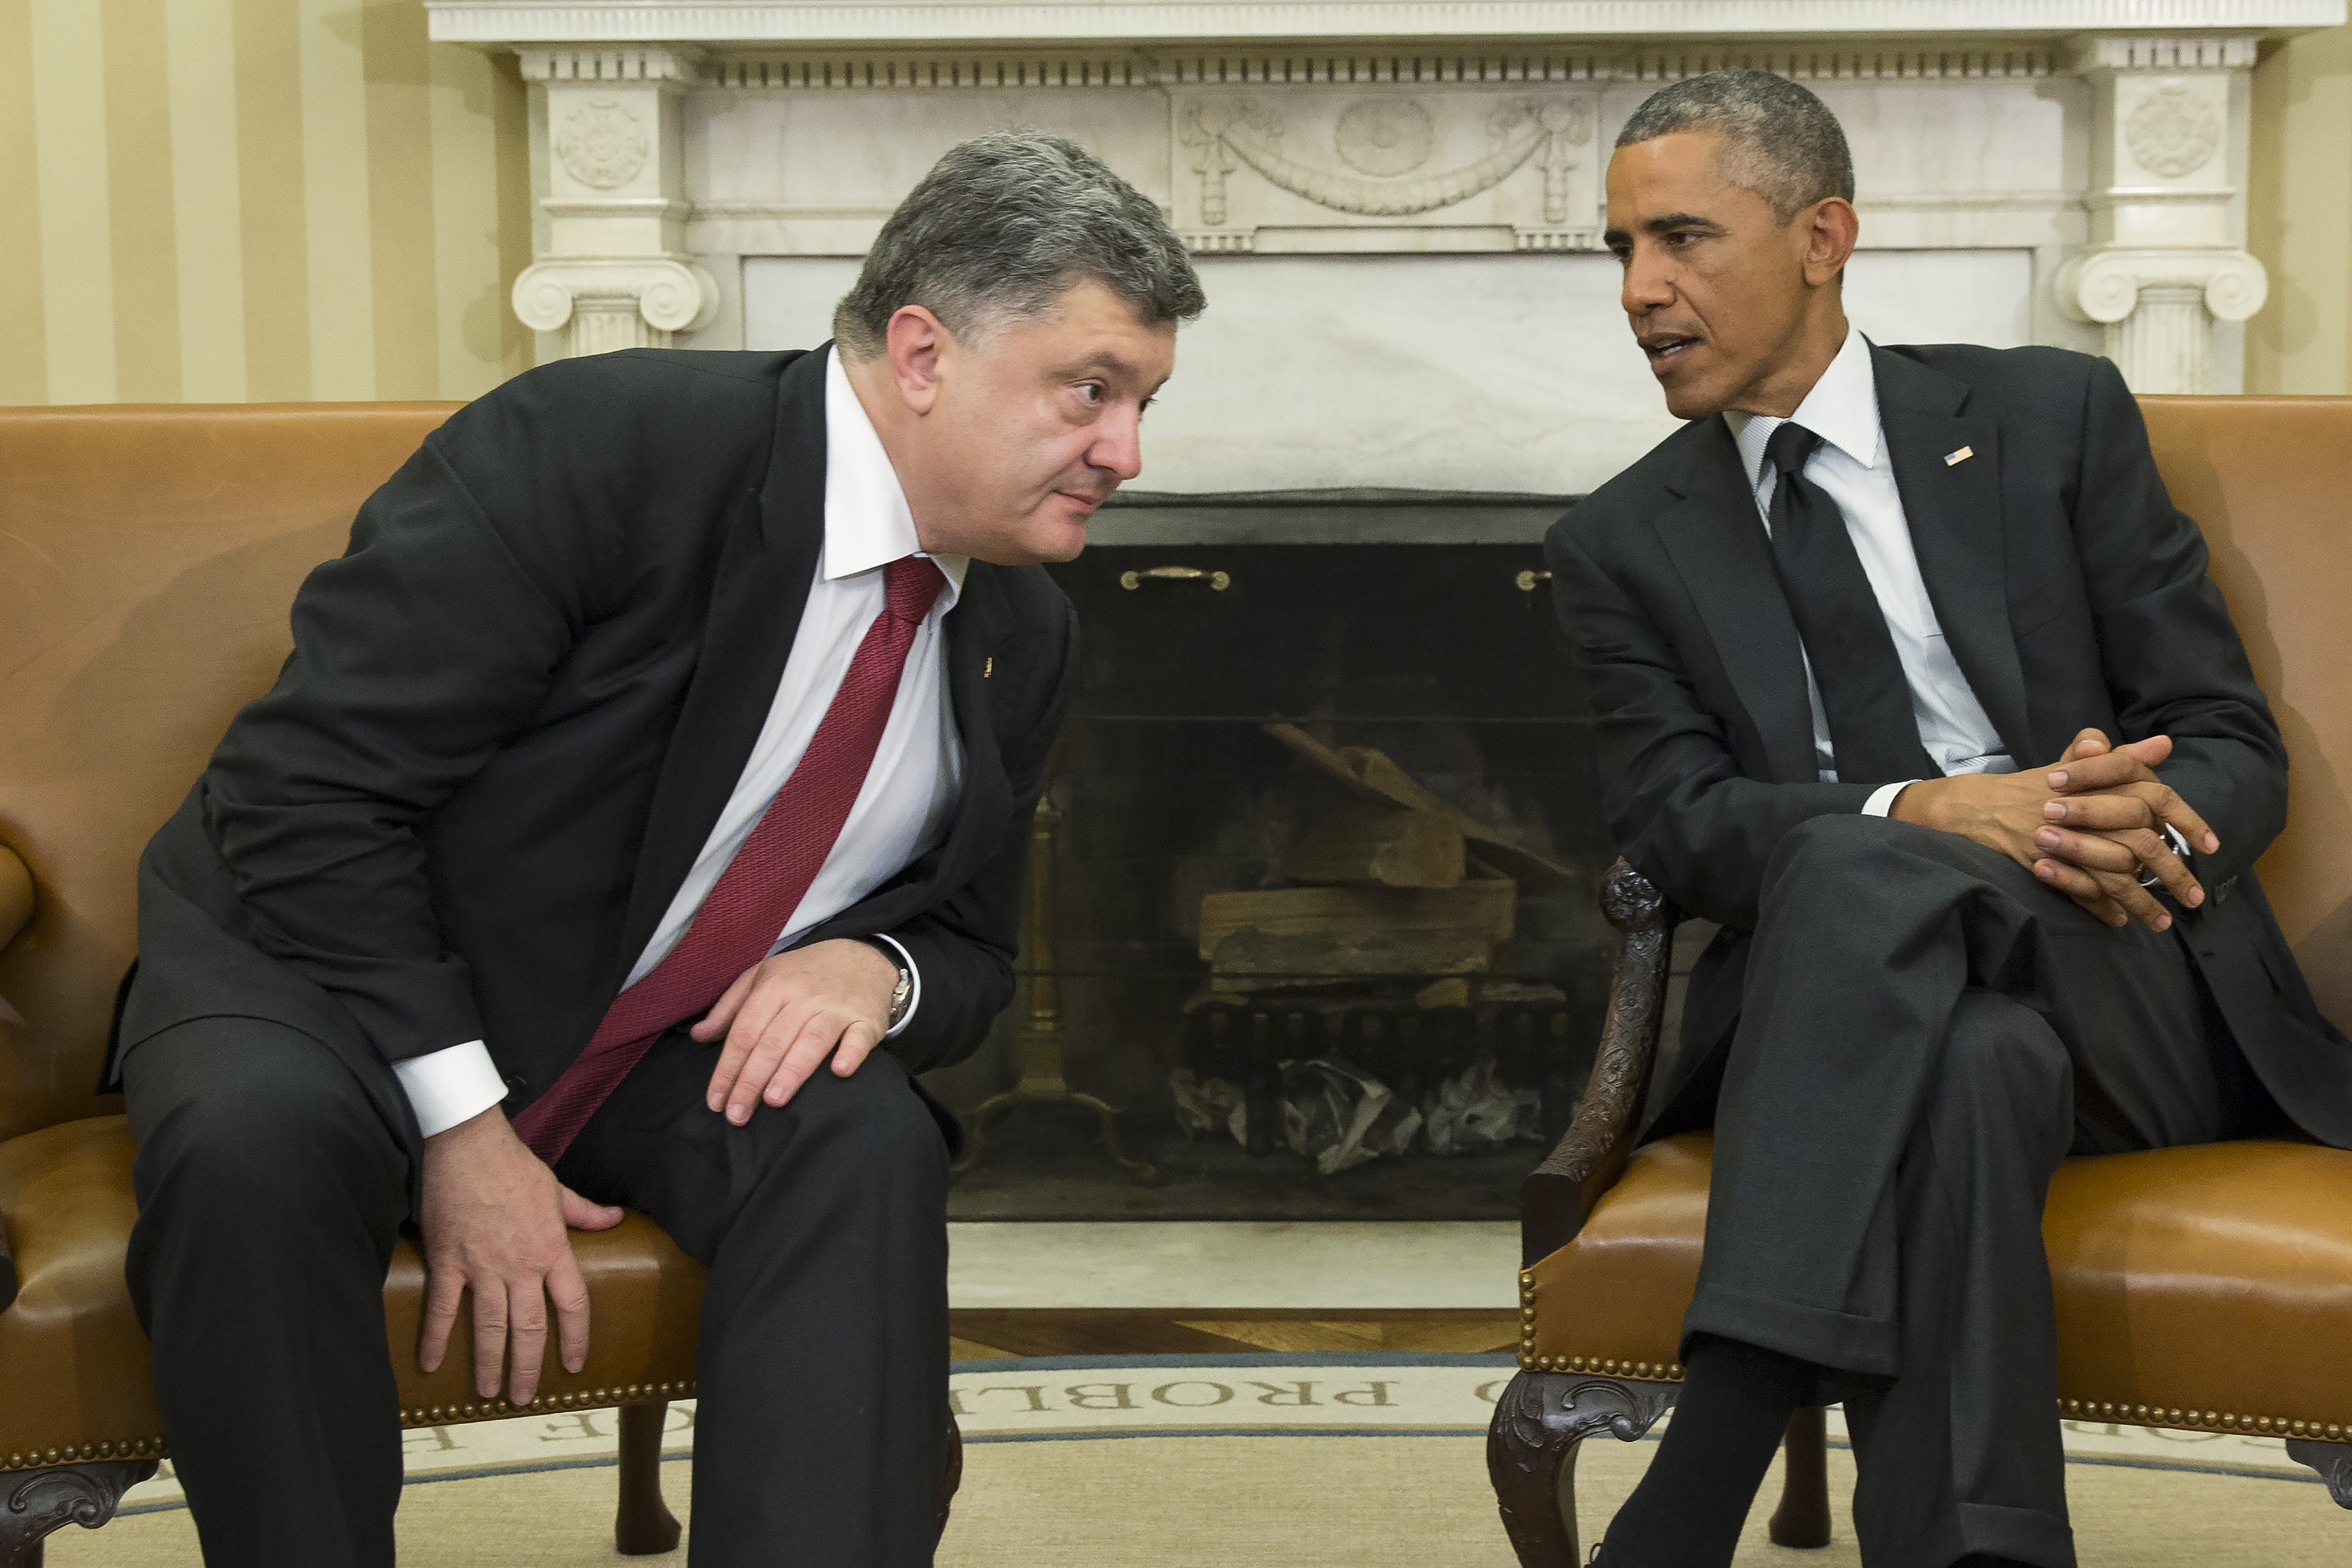 В Украине анонсировали встречу Порошенко и Обамы